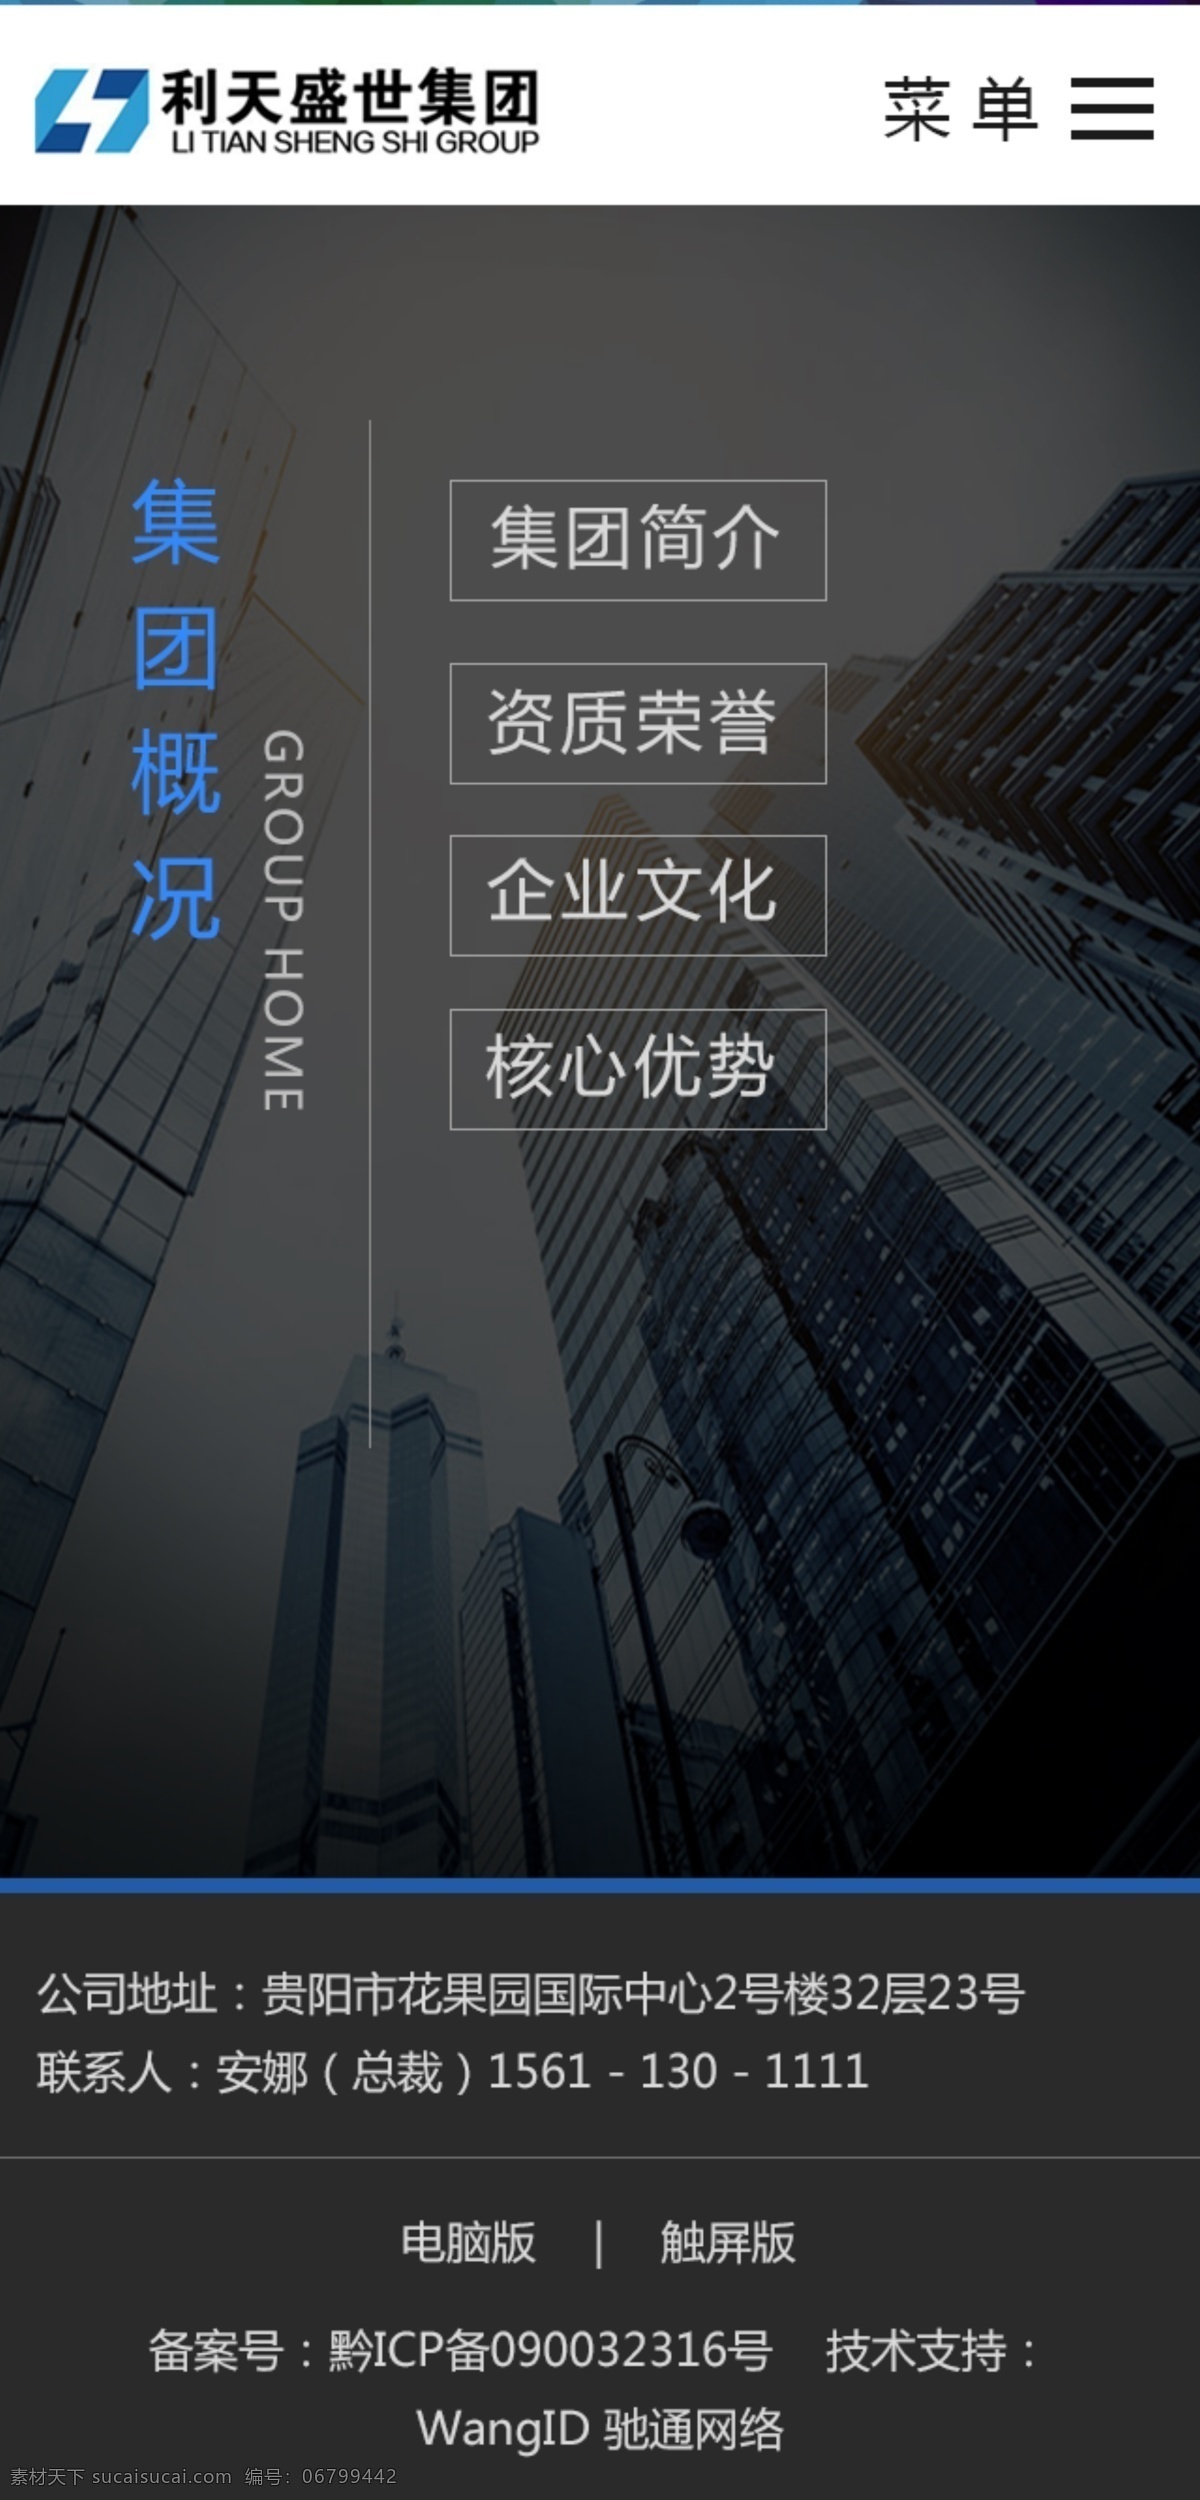 手机二级导航 首页界面 wed 手机app 微官网 手机网站 黑色网站 网页设计 web 界面设计 中文模板